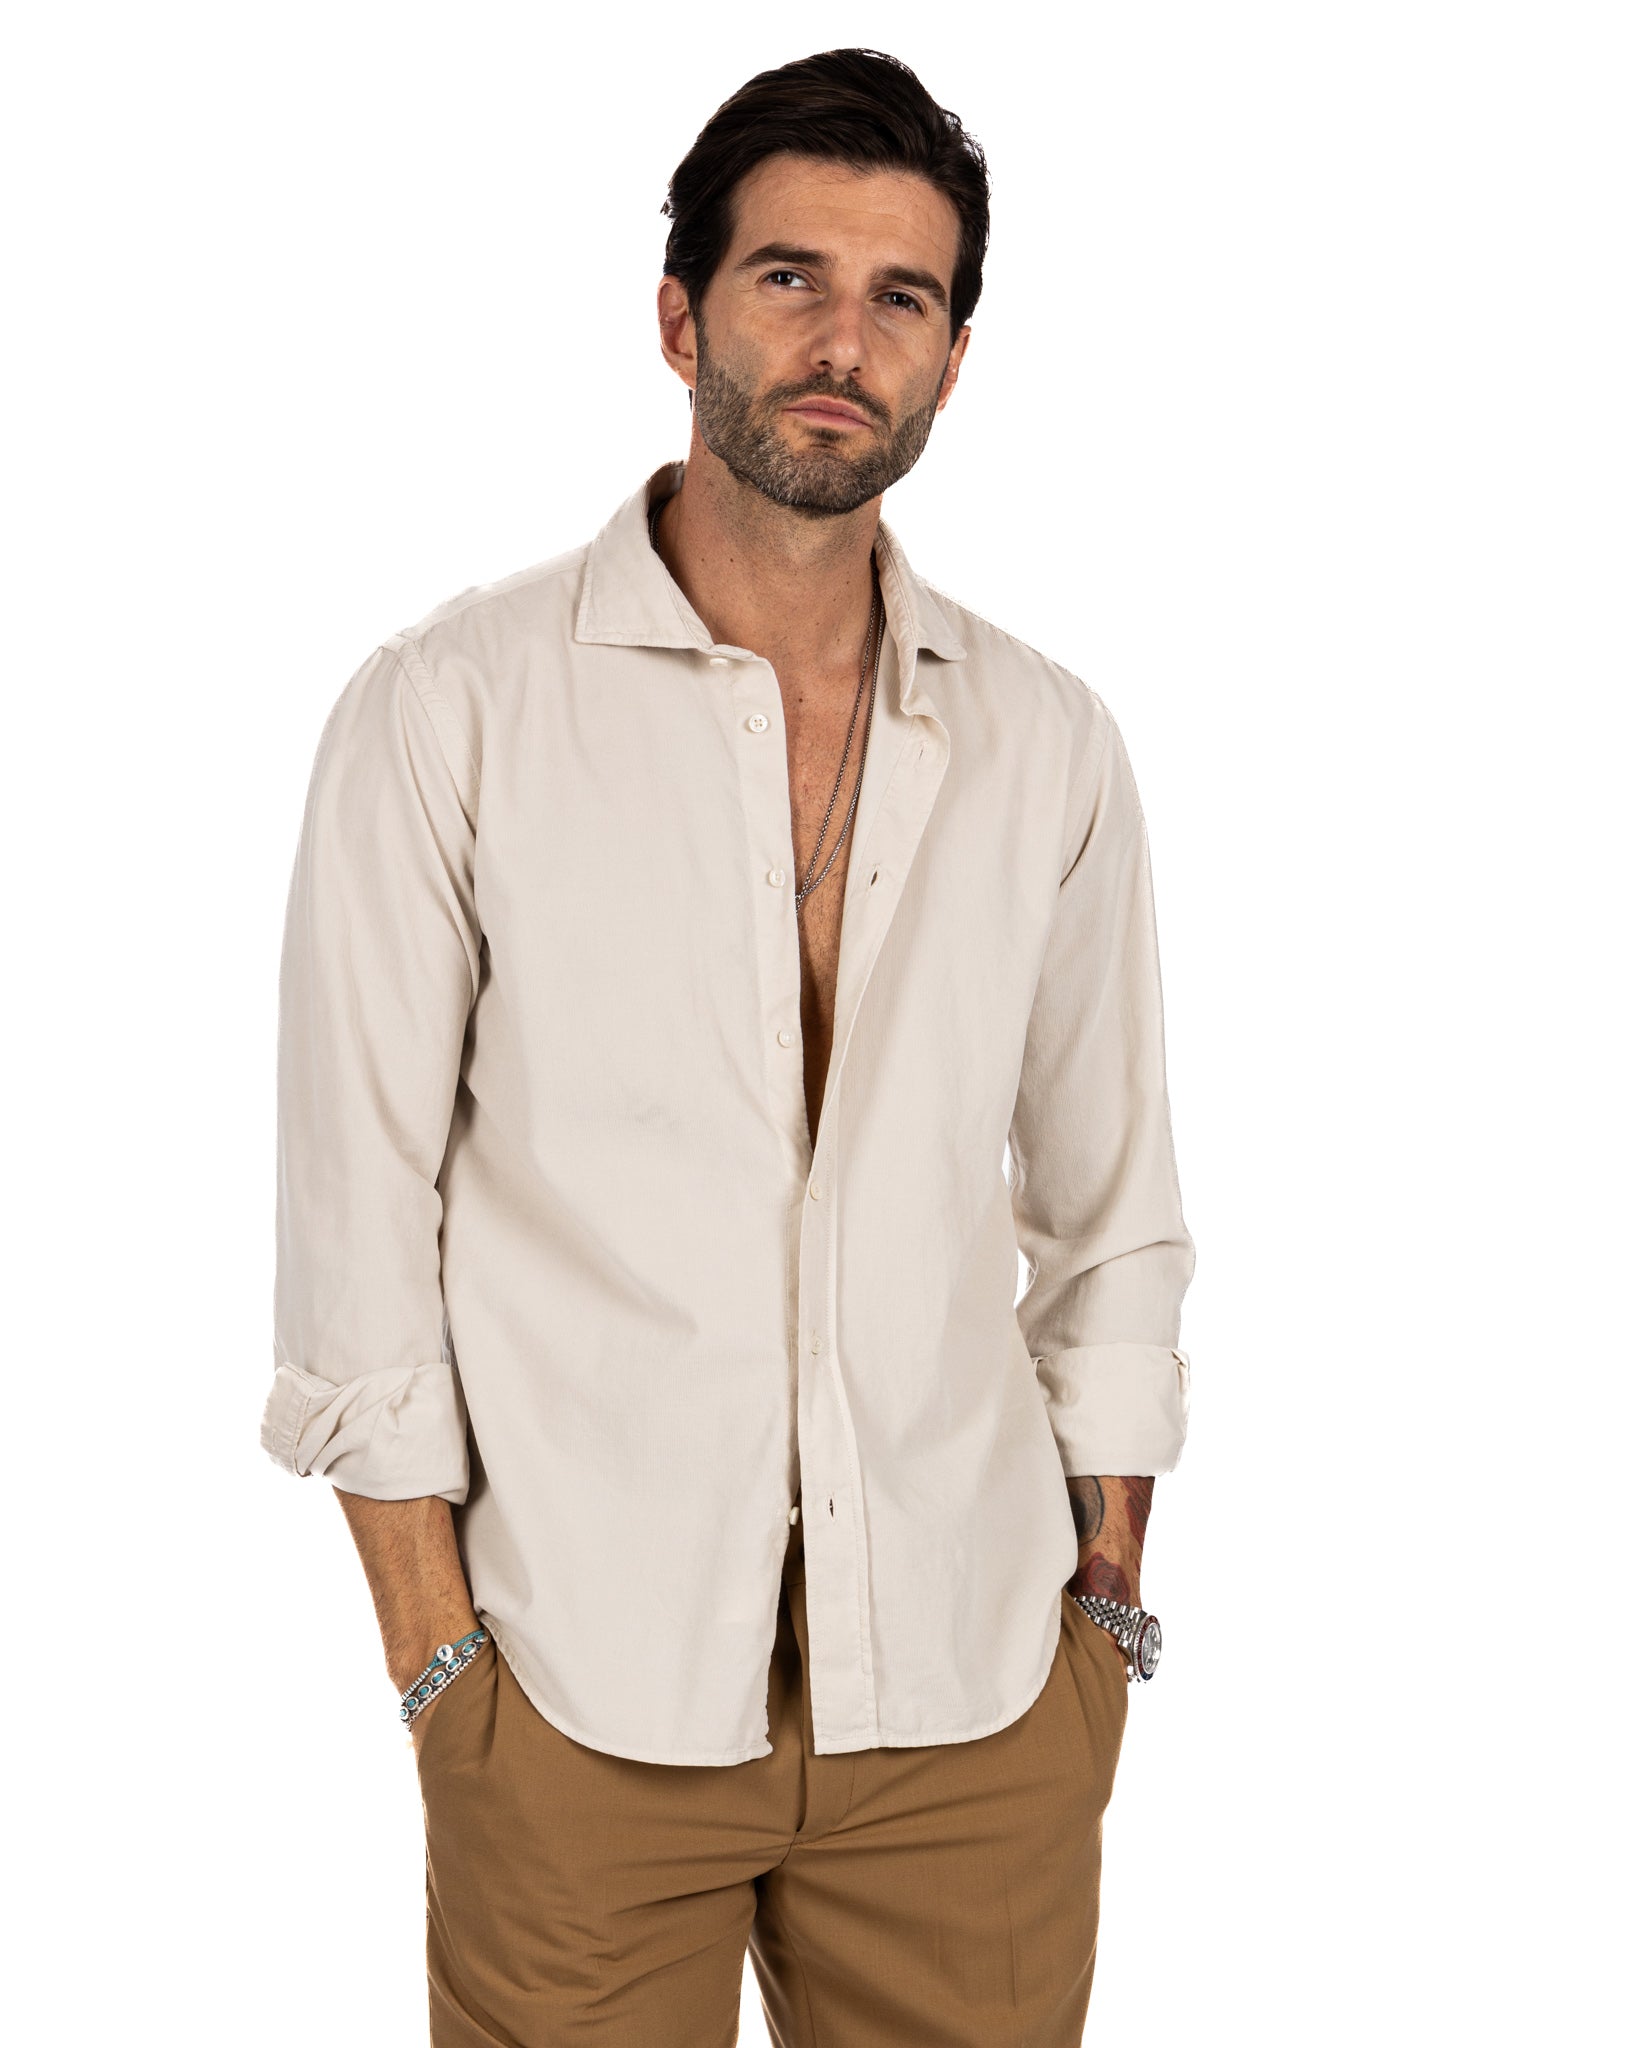 Vega - chemise en velours rayé beige